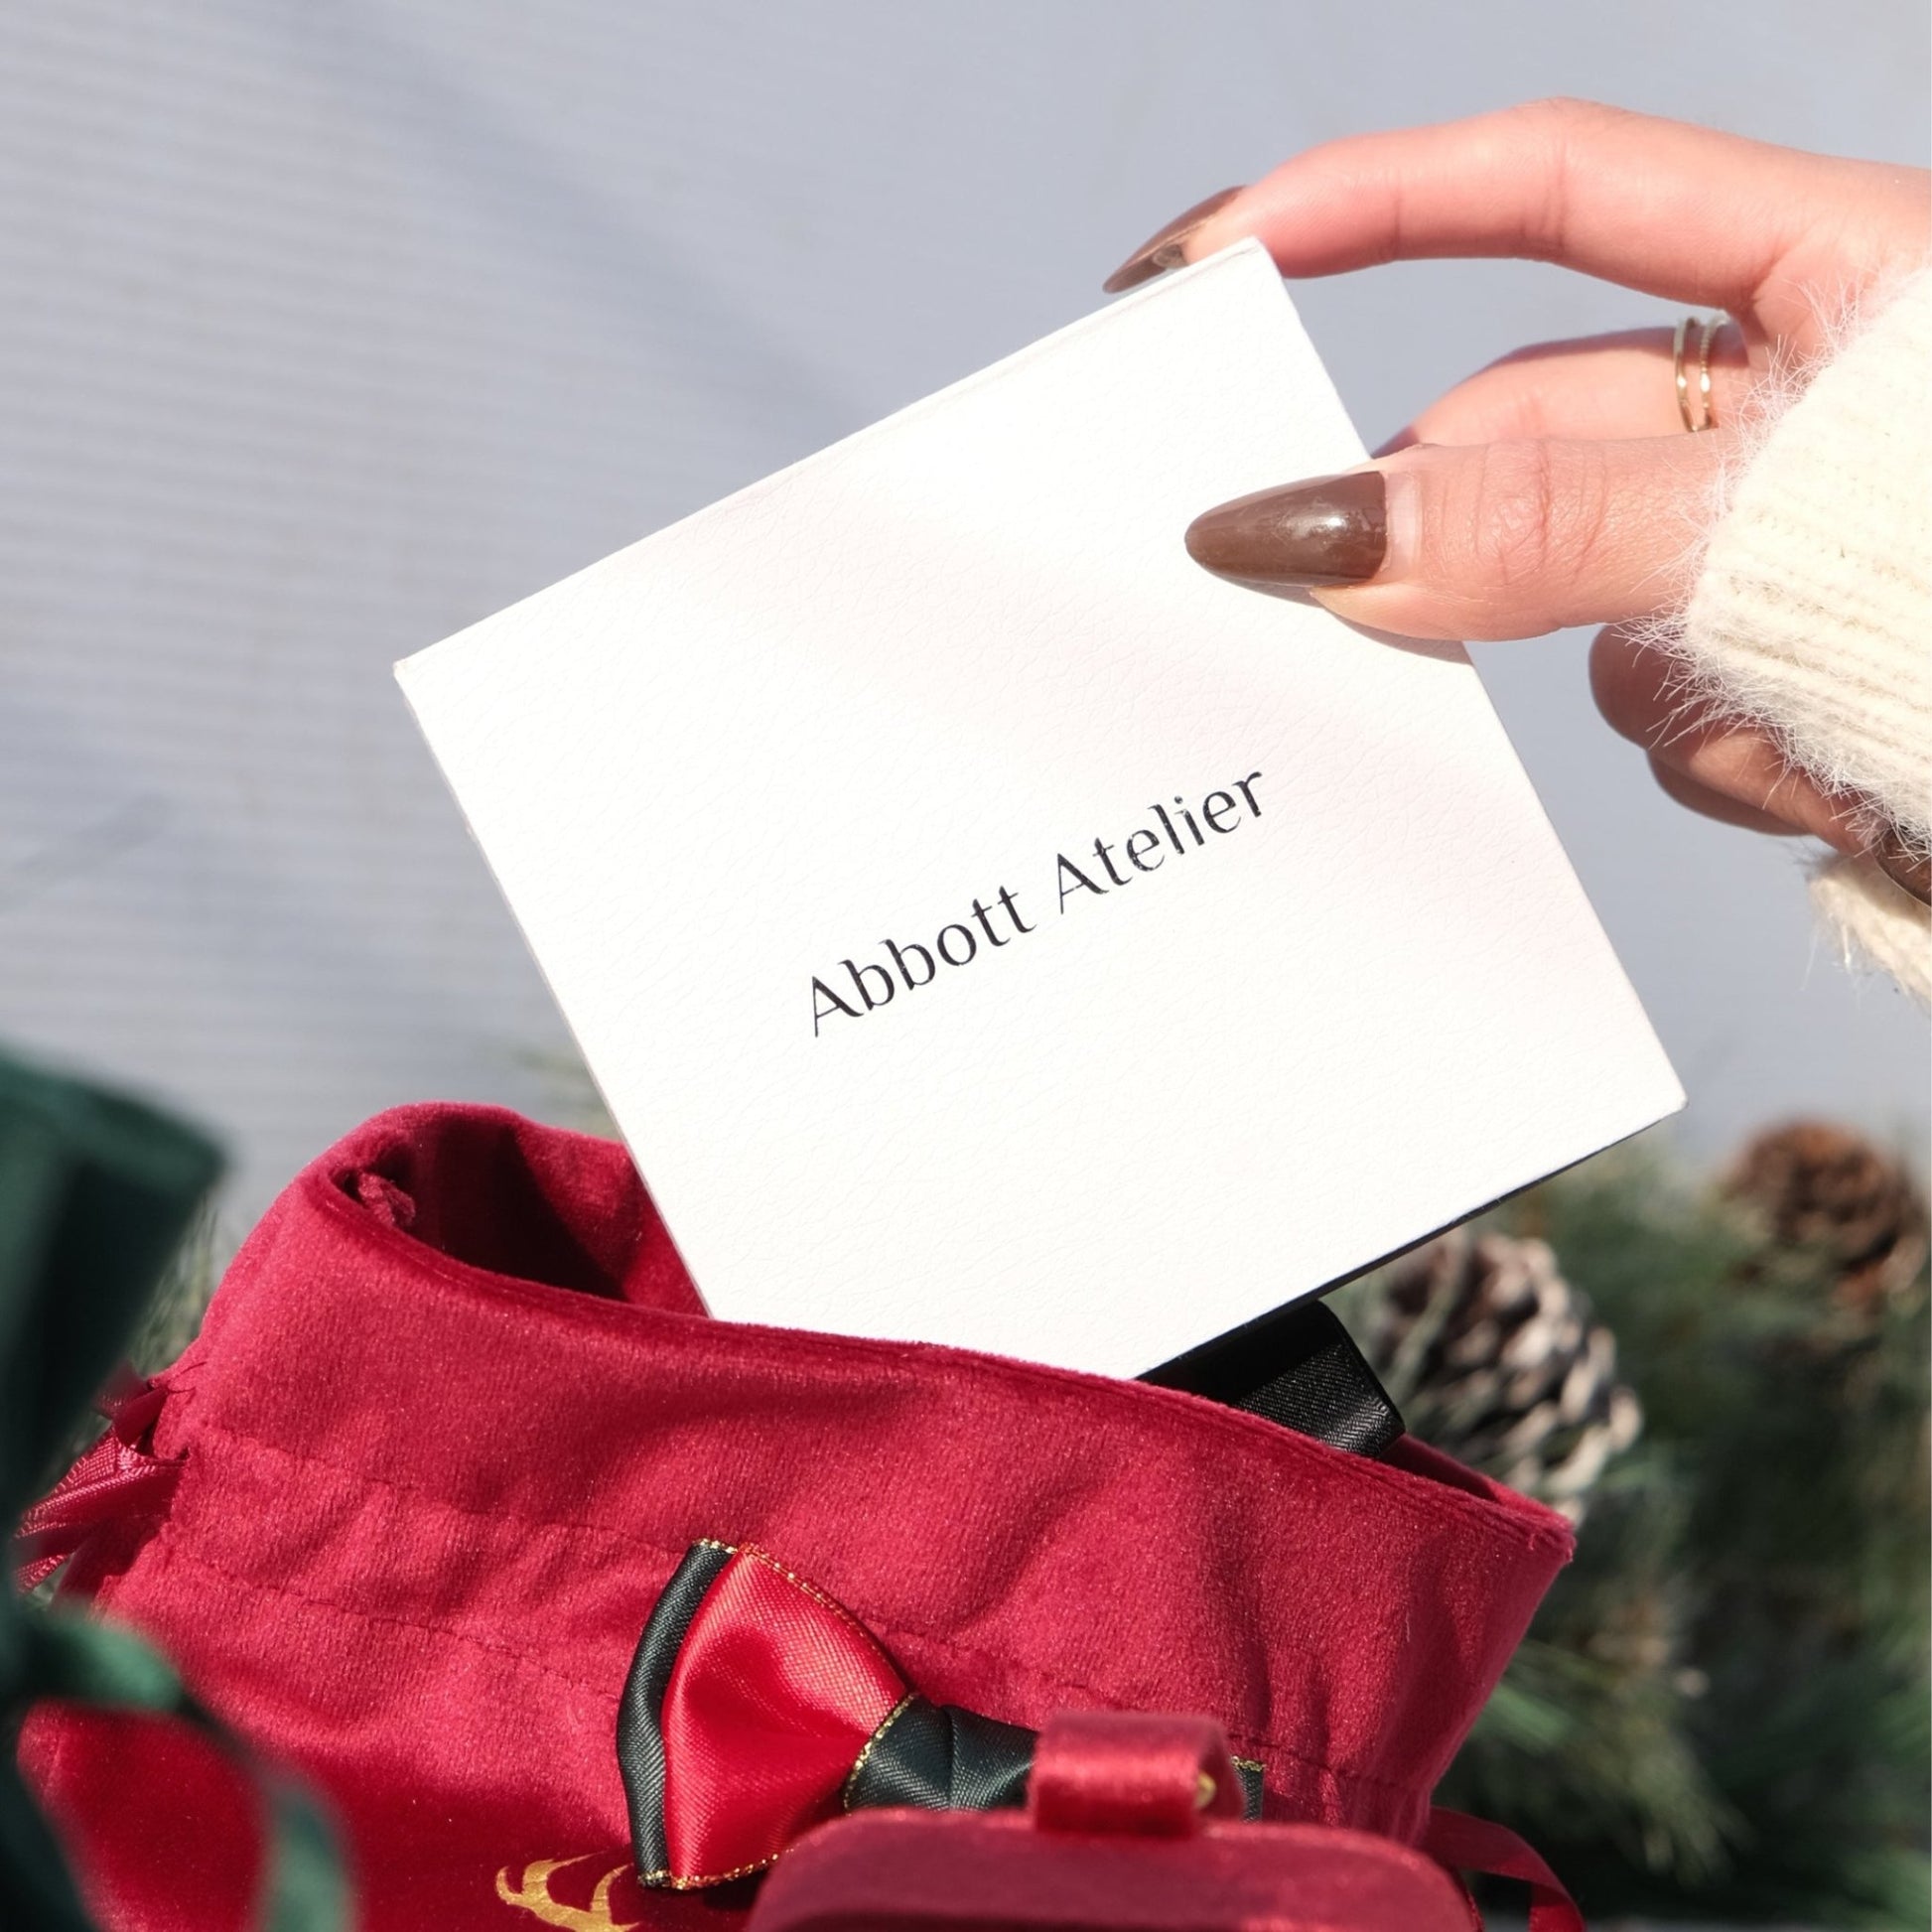 Gift Box - Abbott Atelier - Abbott Atelier